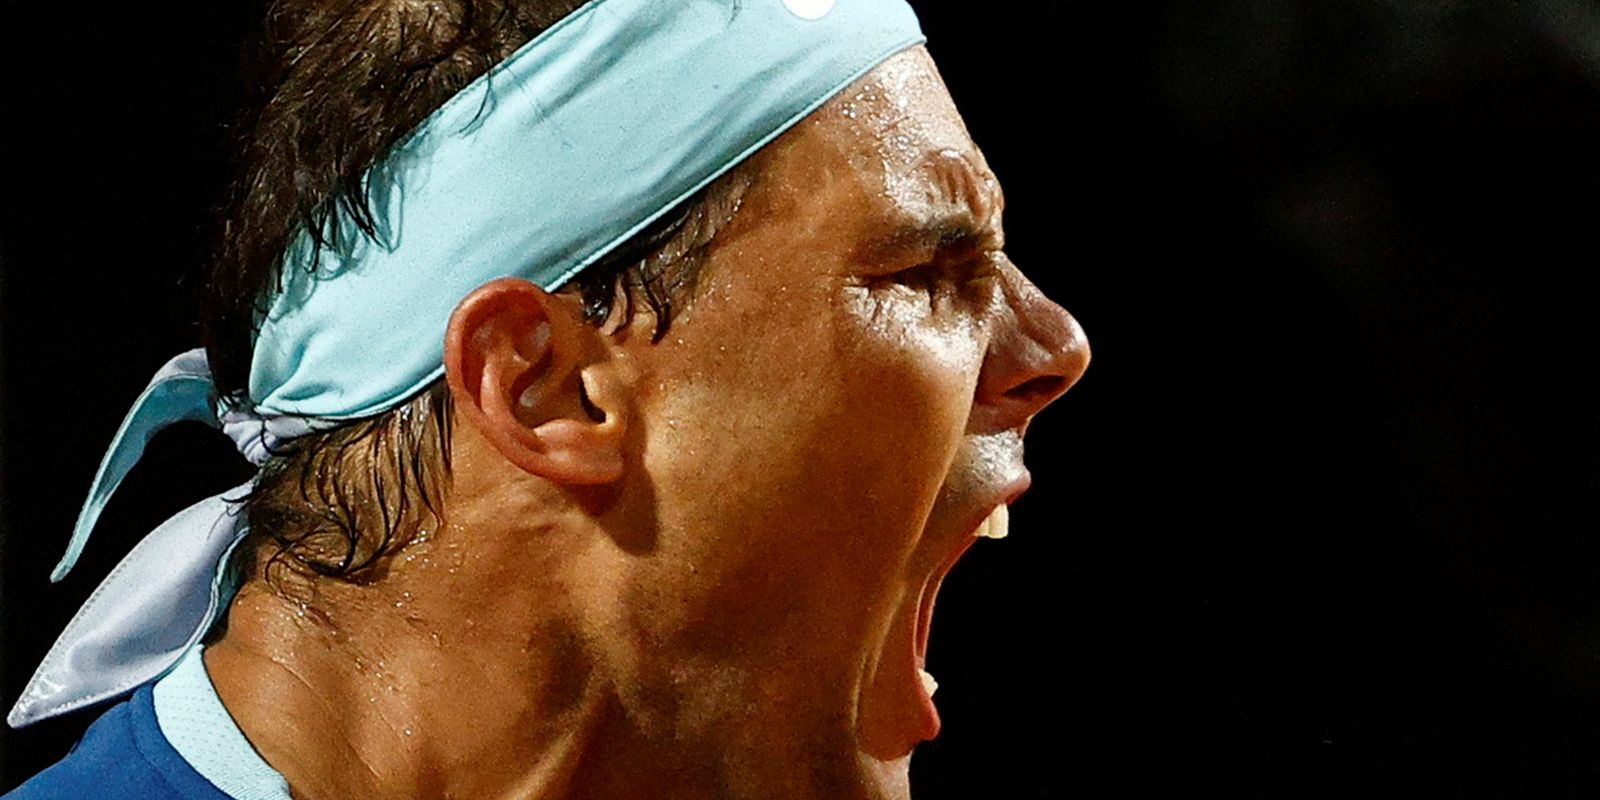 Rafael Nadal prêt pour Roland Garros malgré ses blessures